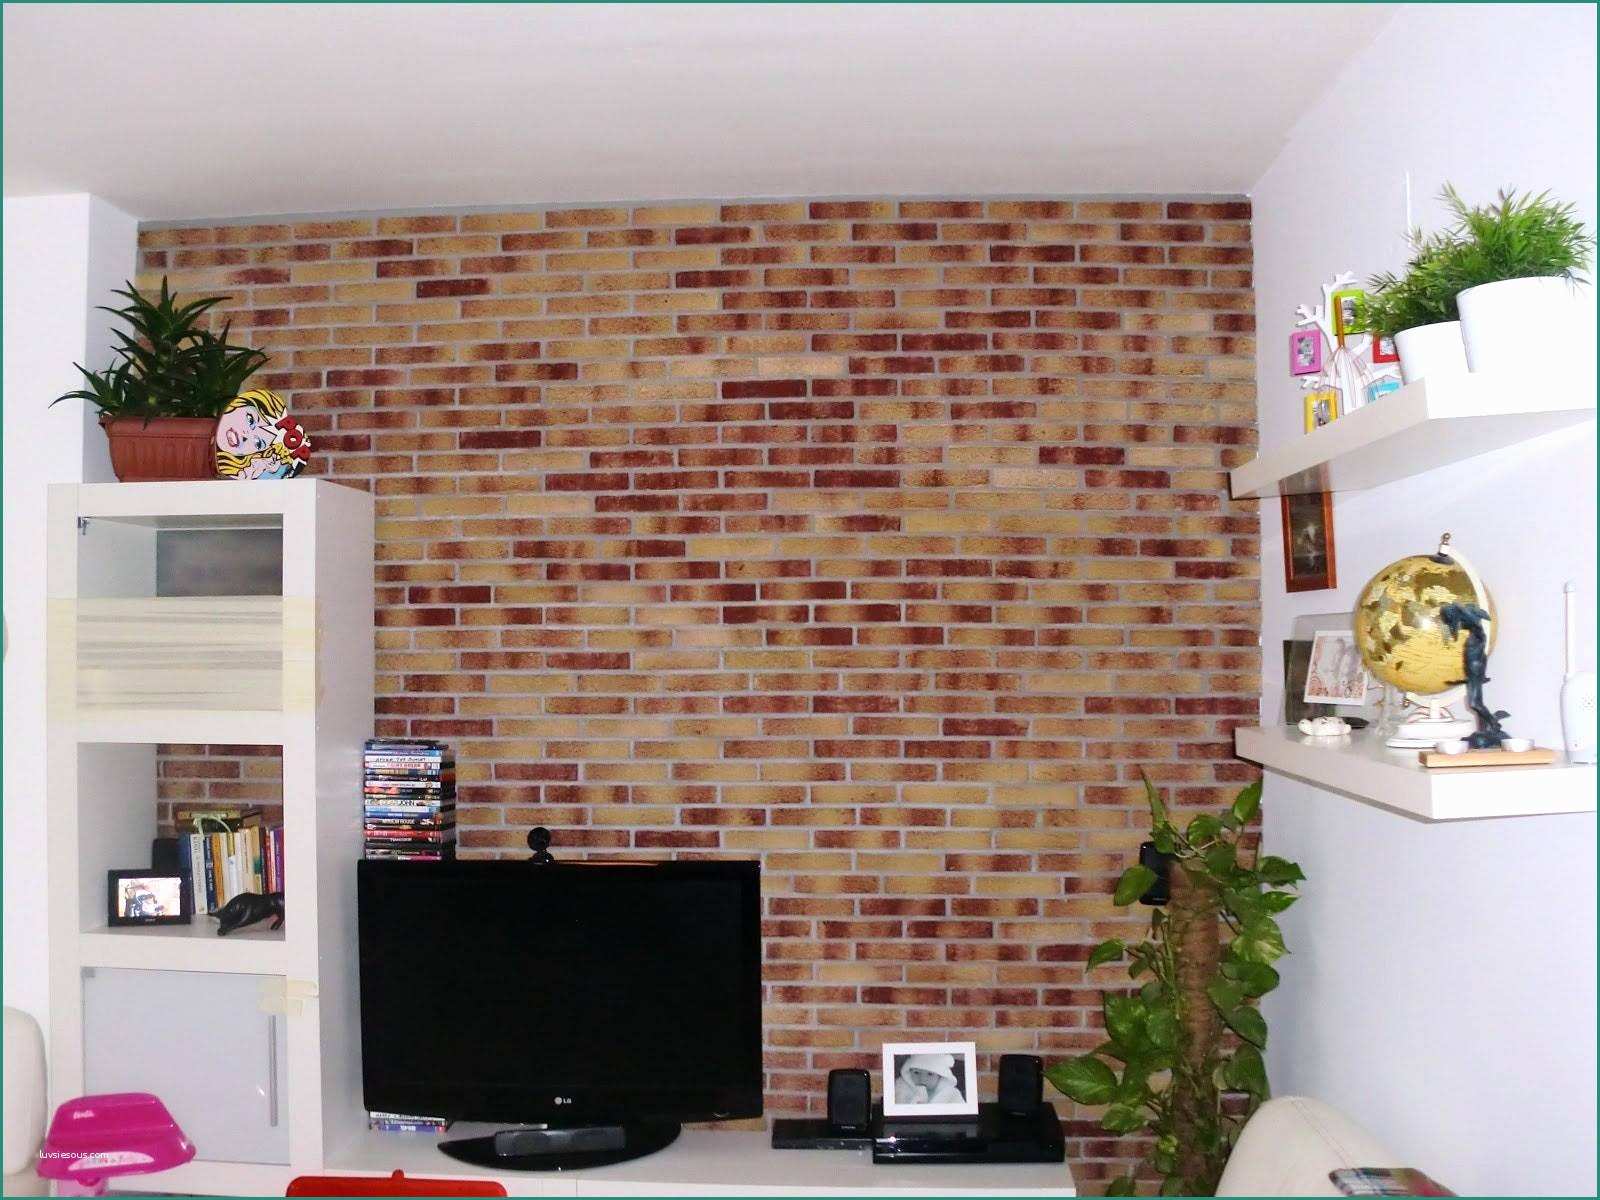 Tabella colori pareti e colori per la casa interni simple for Tabella colori pareti interne